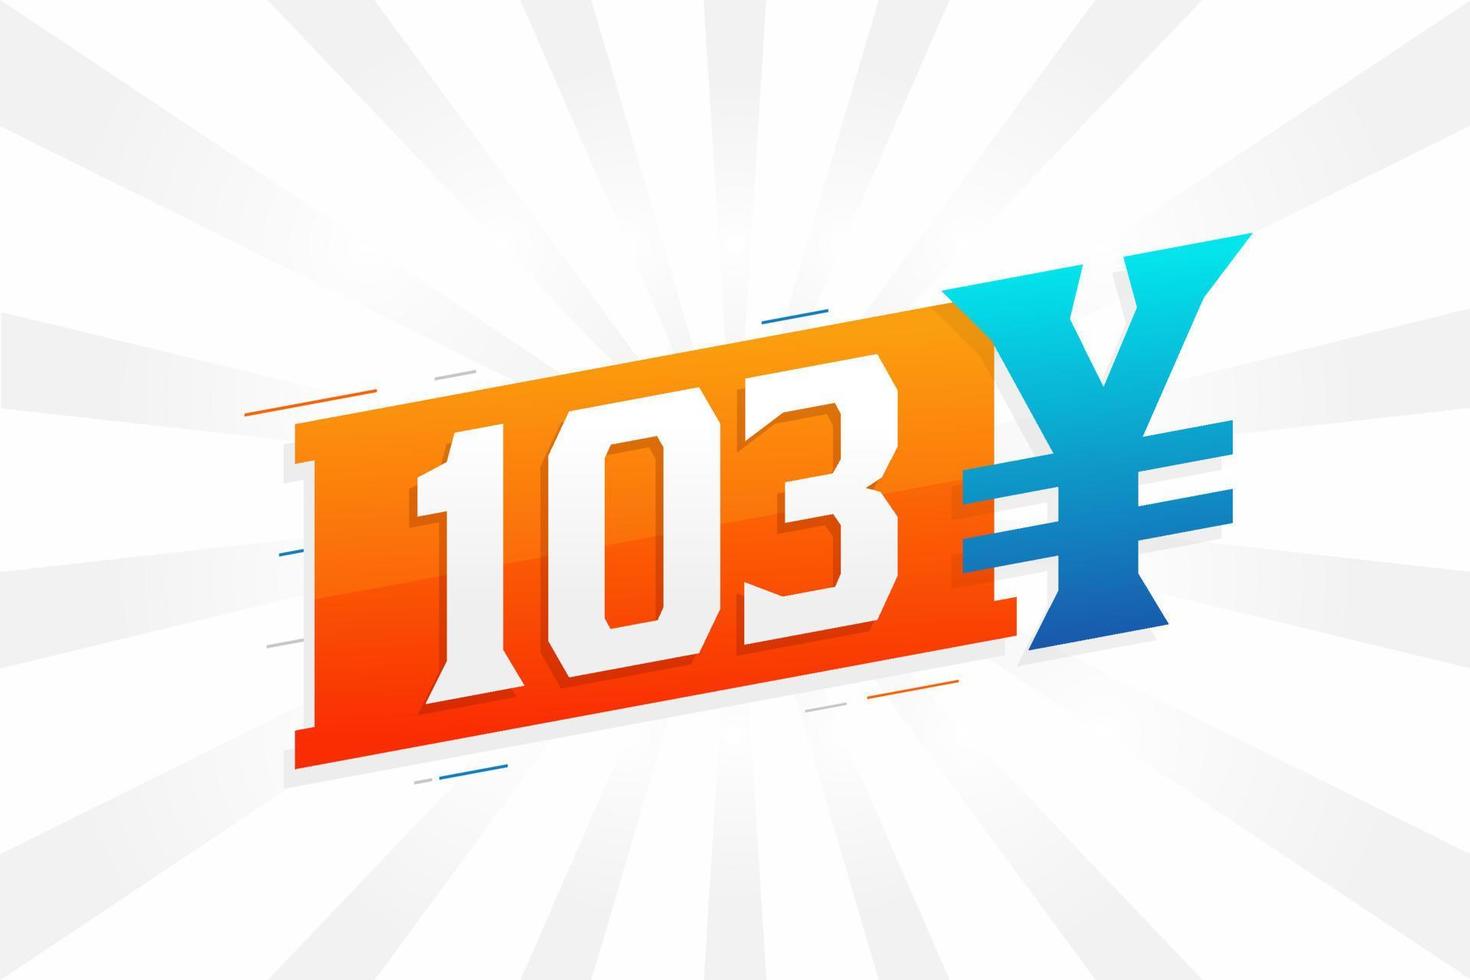 103 Yuan chinesische Währung Vektortextsymbol. 103 Yen japanische Währung Geld Aktienvektor vektor